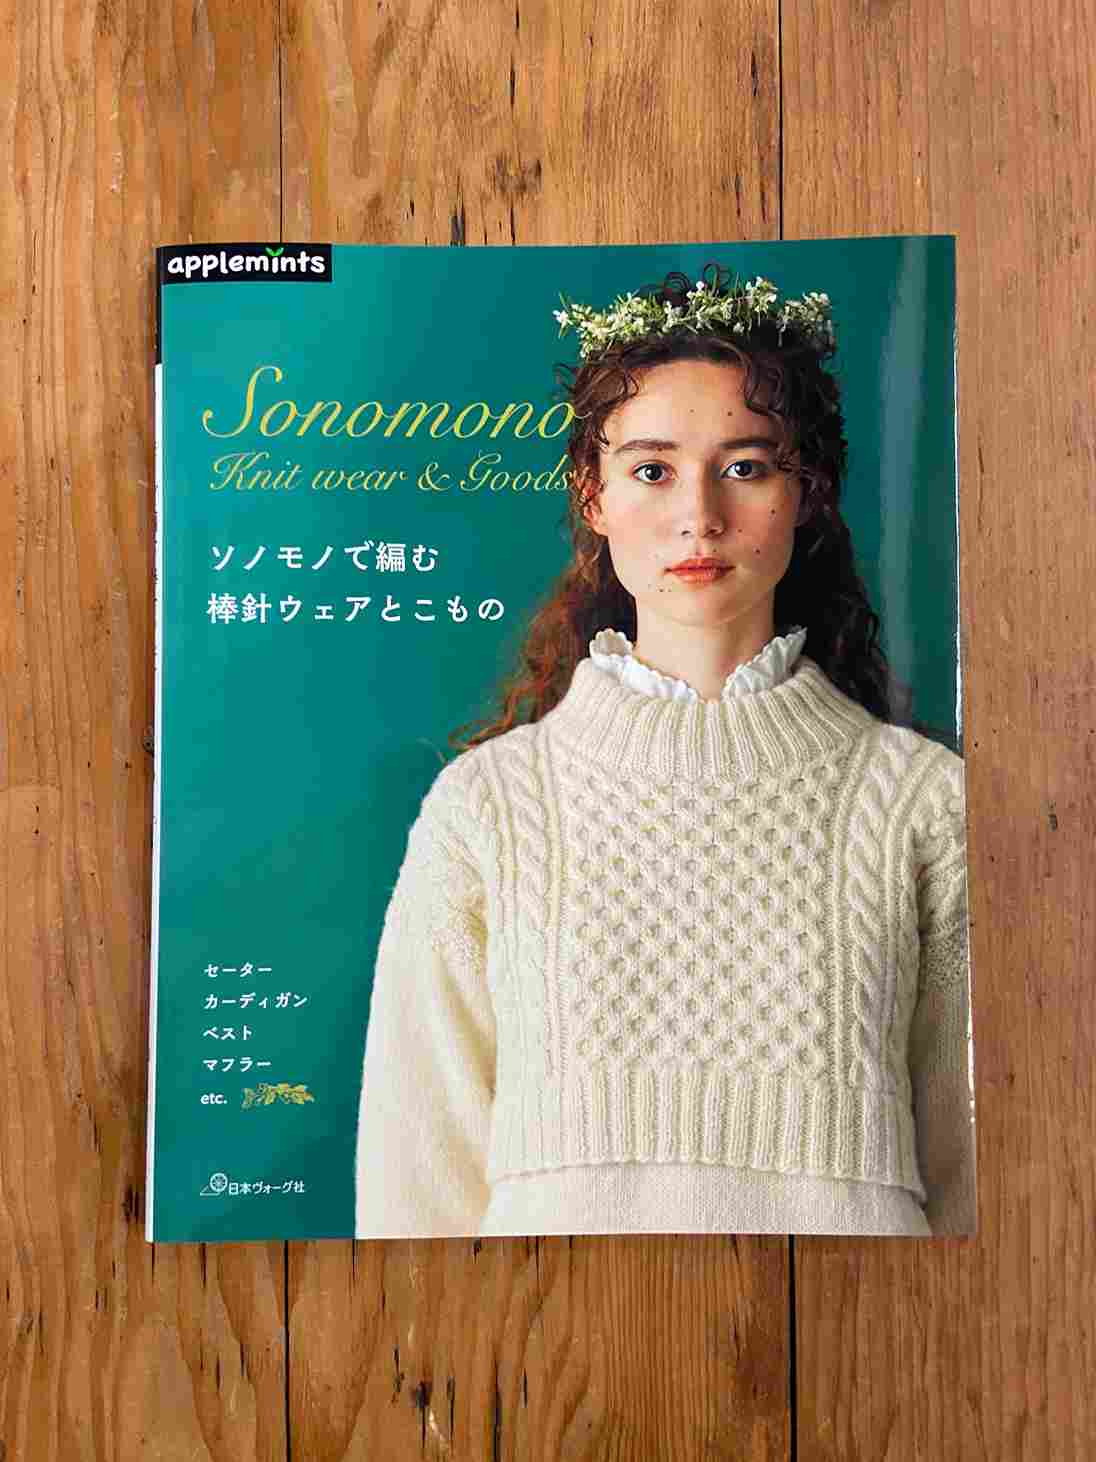 8月16日発売『ソノモノで編む 棒針ウェアとこもの』 - ニュース | 日本